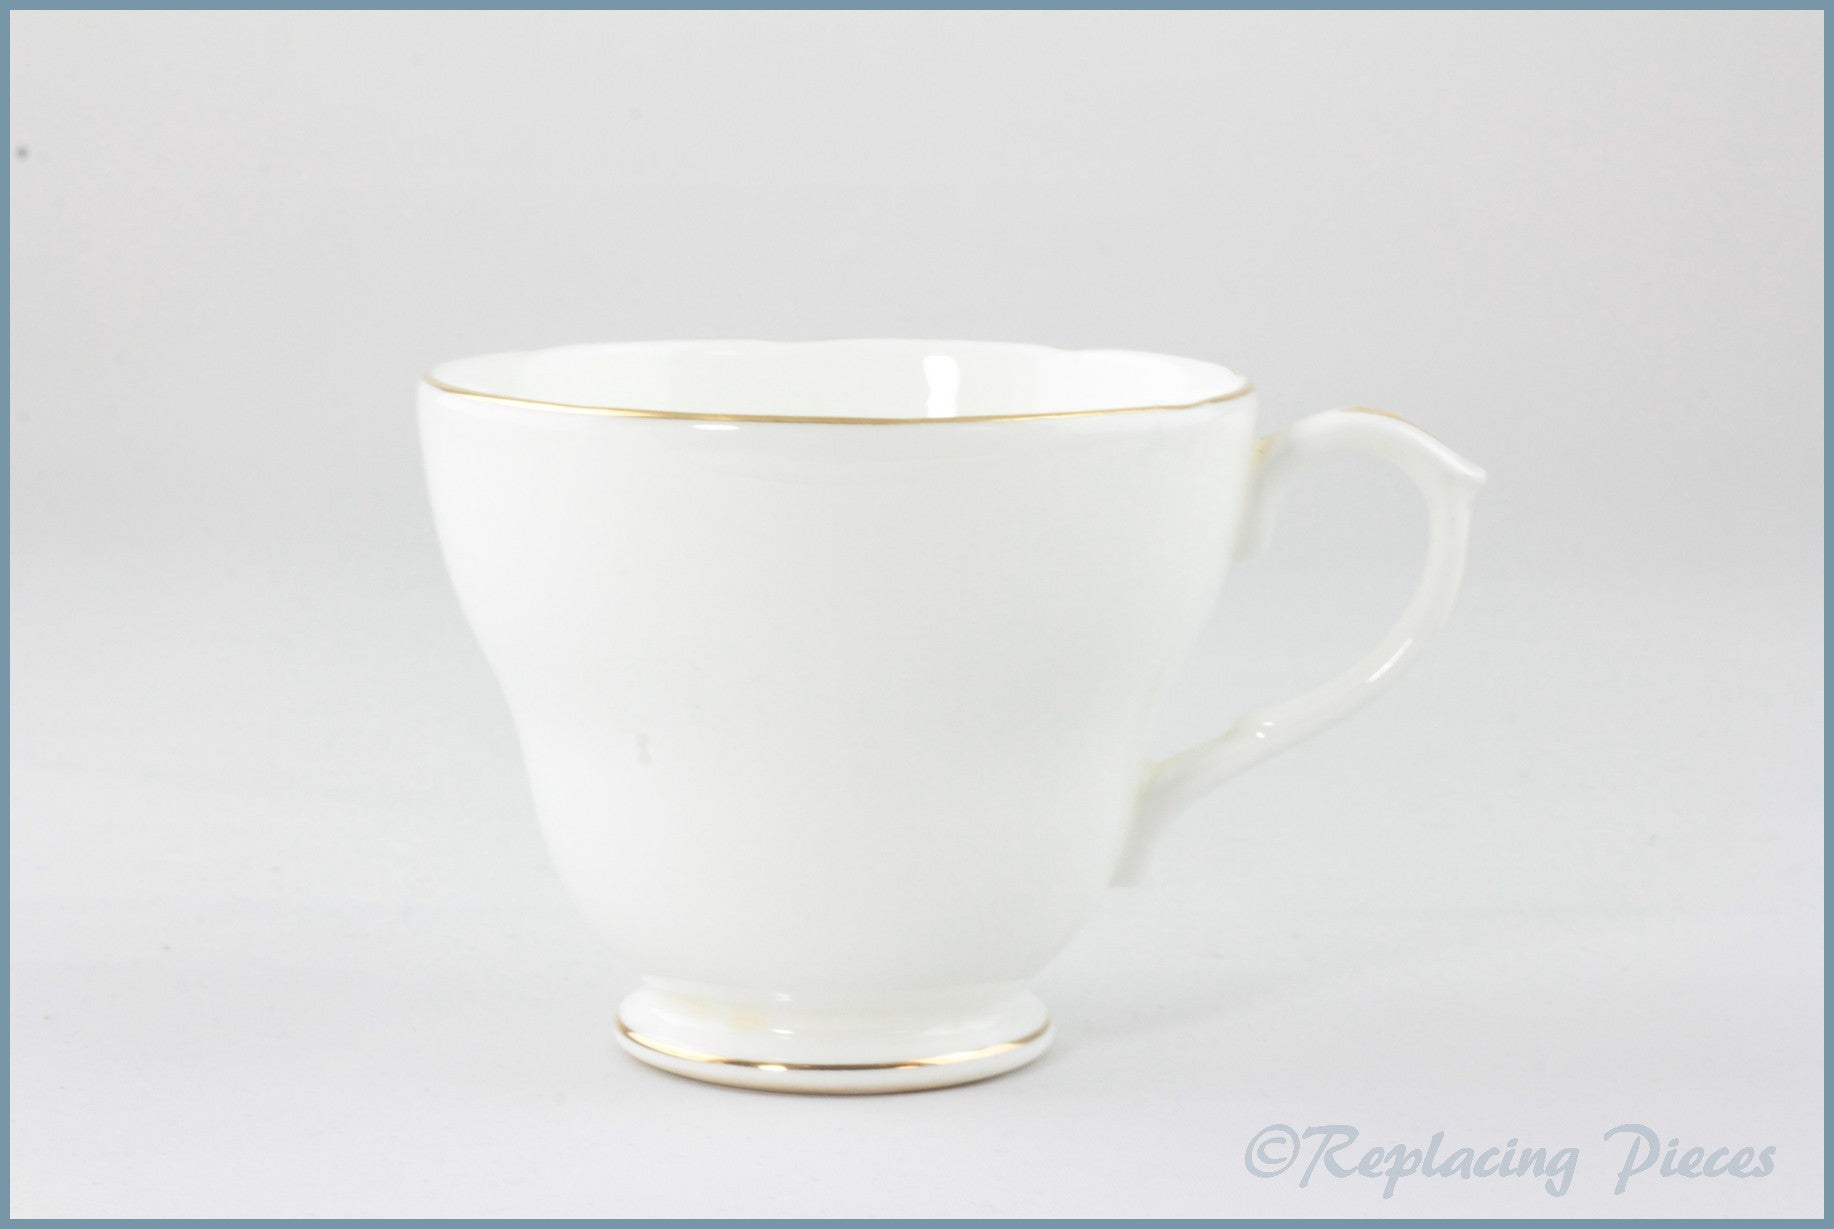 Duchess - White & Gold - Teacup